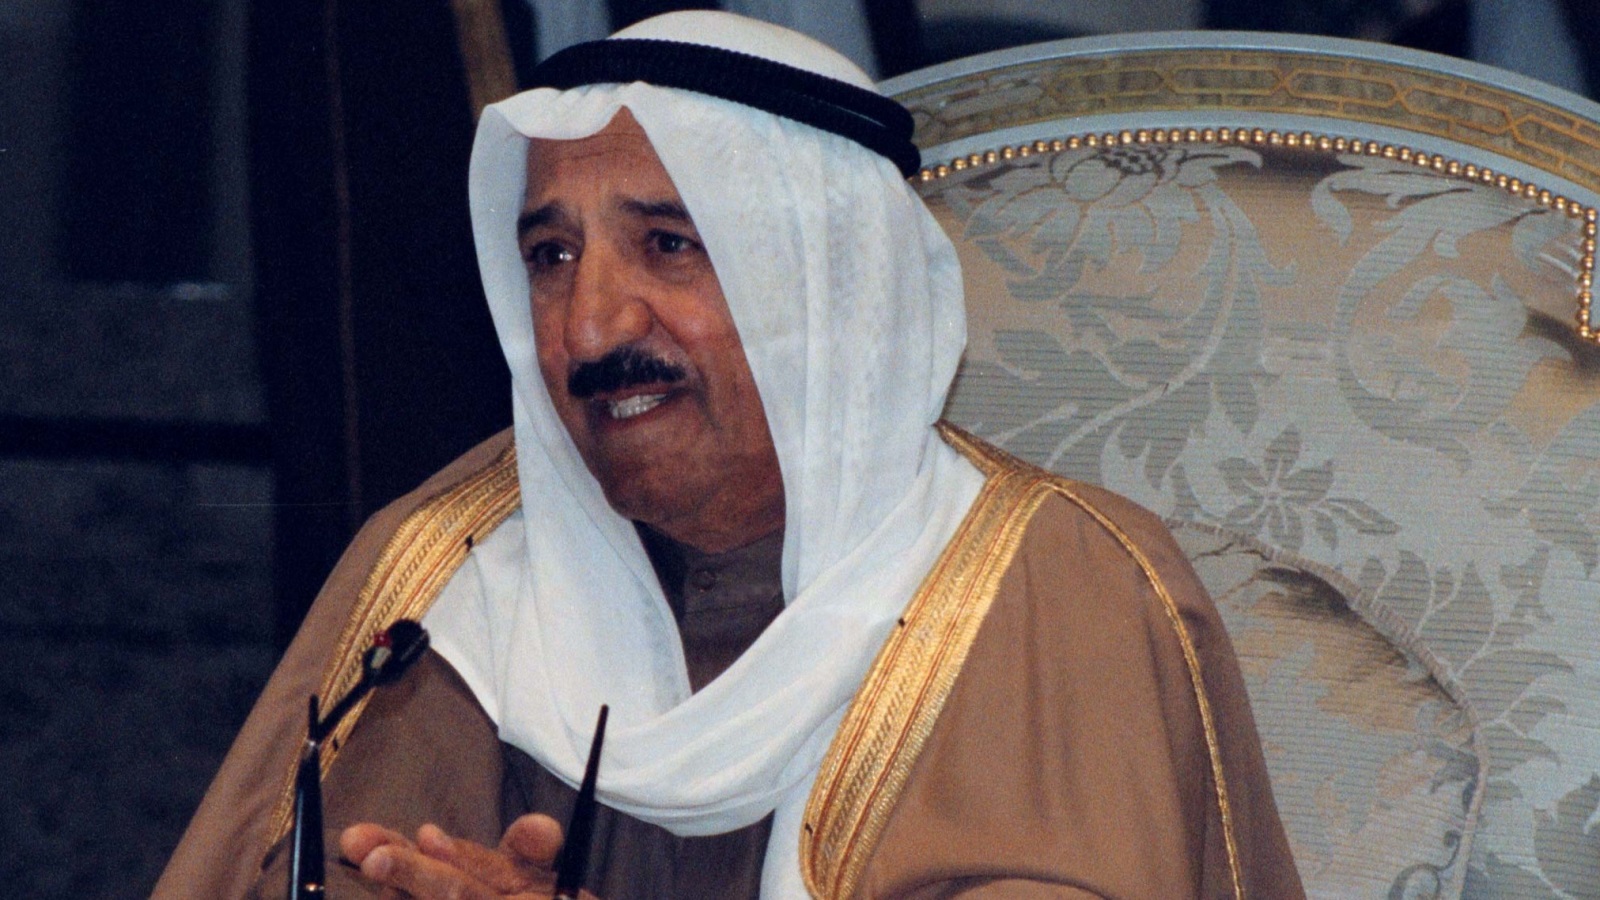  الشيخ صباح الأحمد عندما كان وزير الخارجية - 1998 (رويترز)